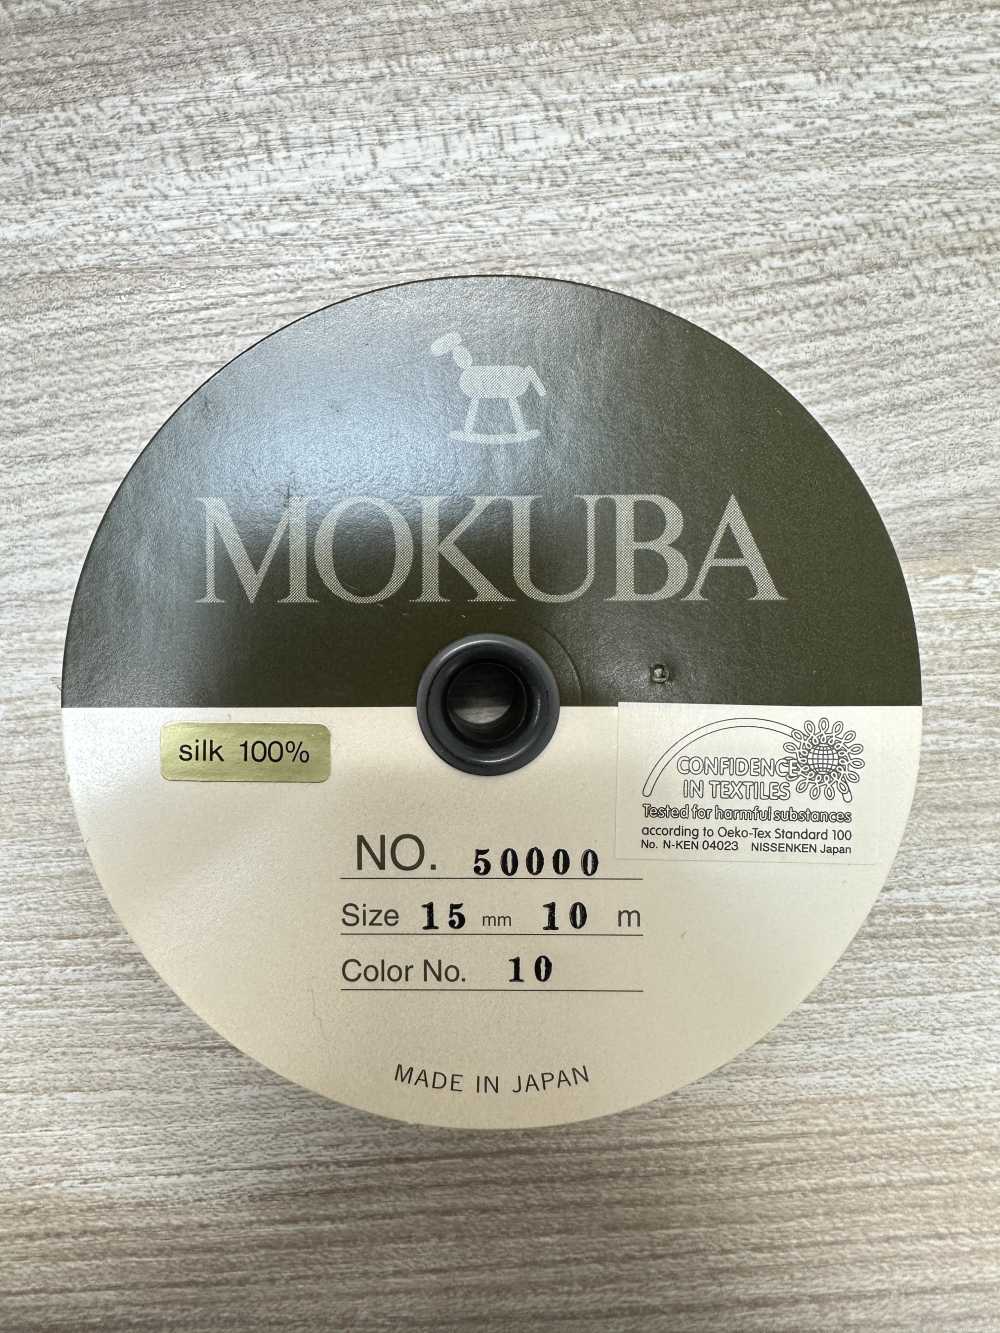 50000 MOKUBA Silk Petasaham Băng [Giá đặc Biệt][Dây Băng Ruy Băng] Mokuba